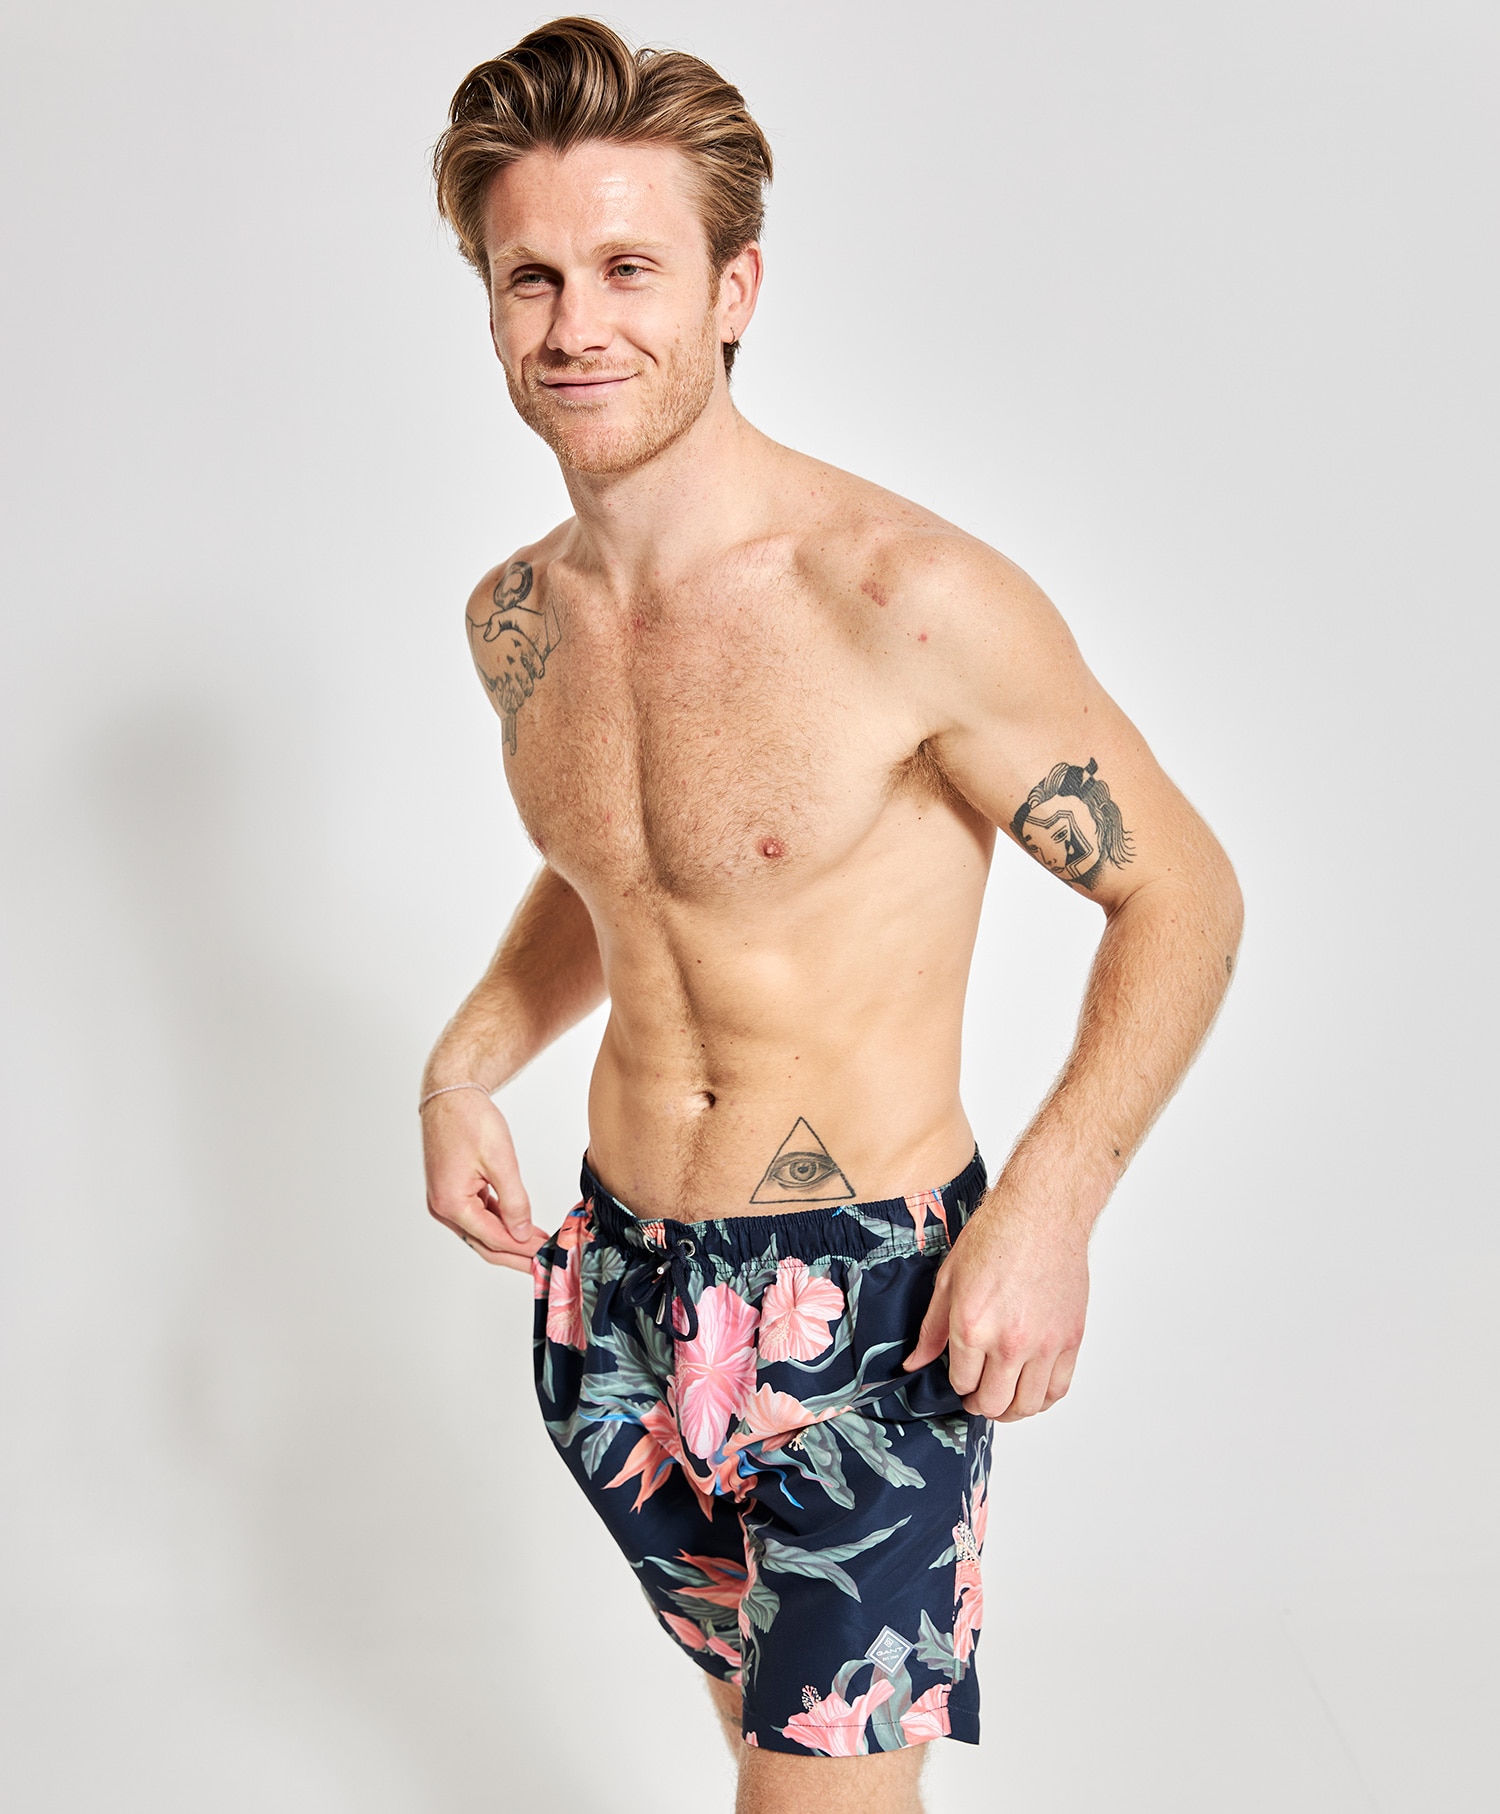 GANT Tropical print swim shorts